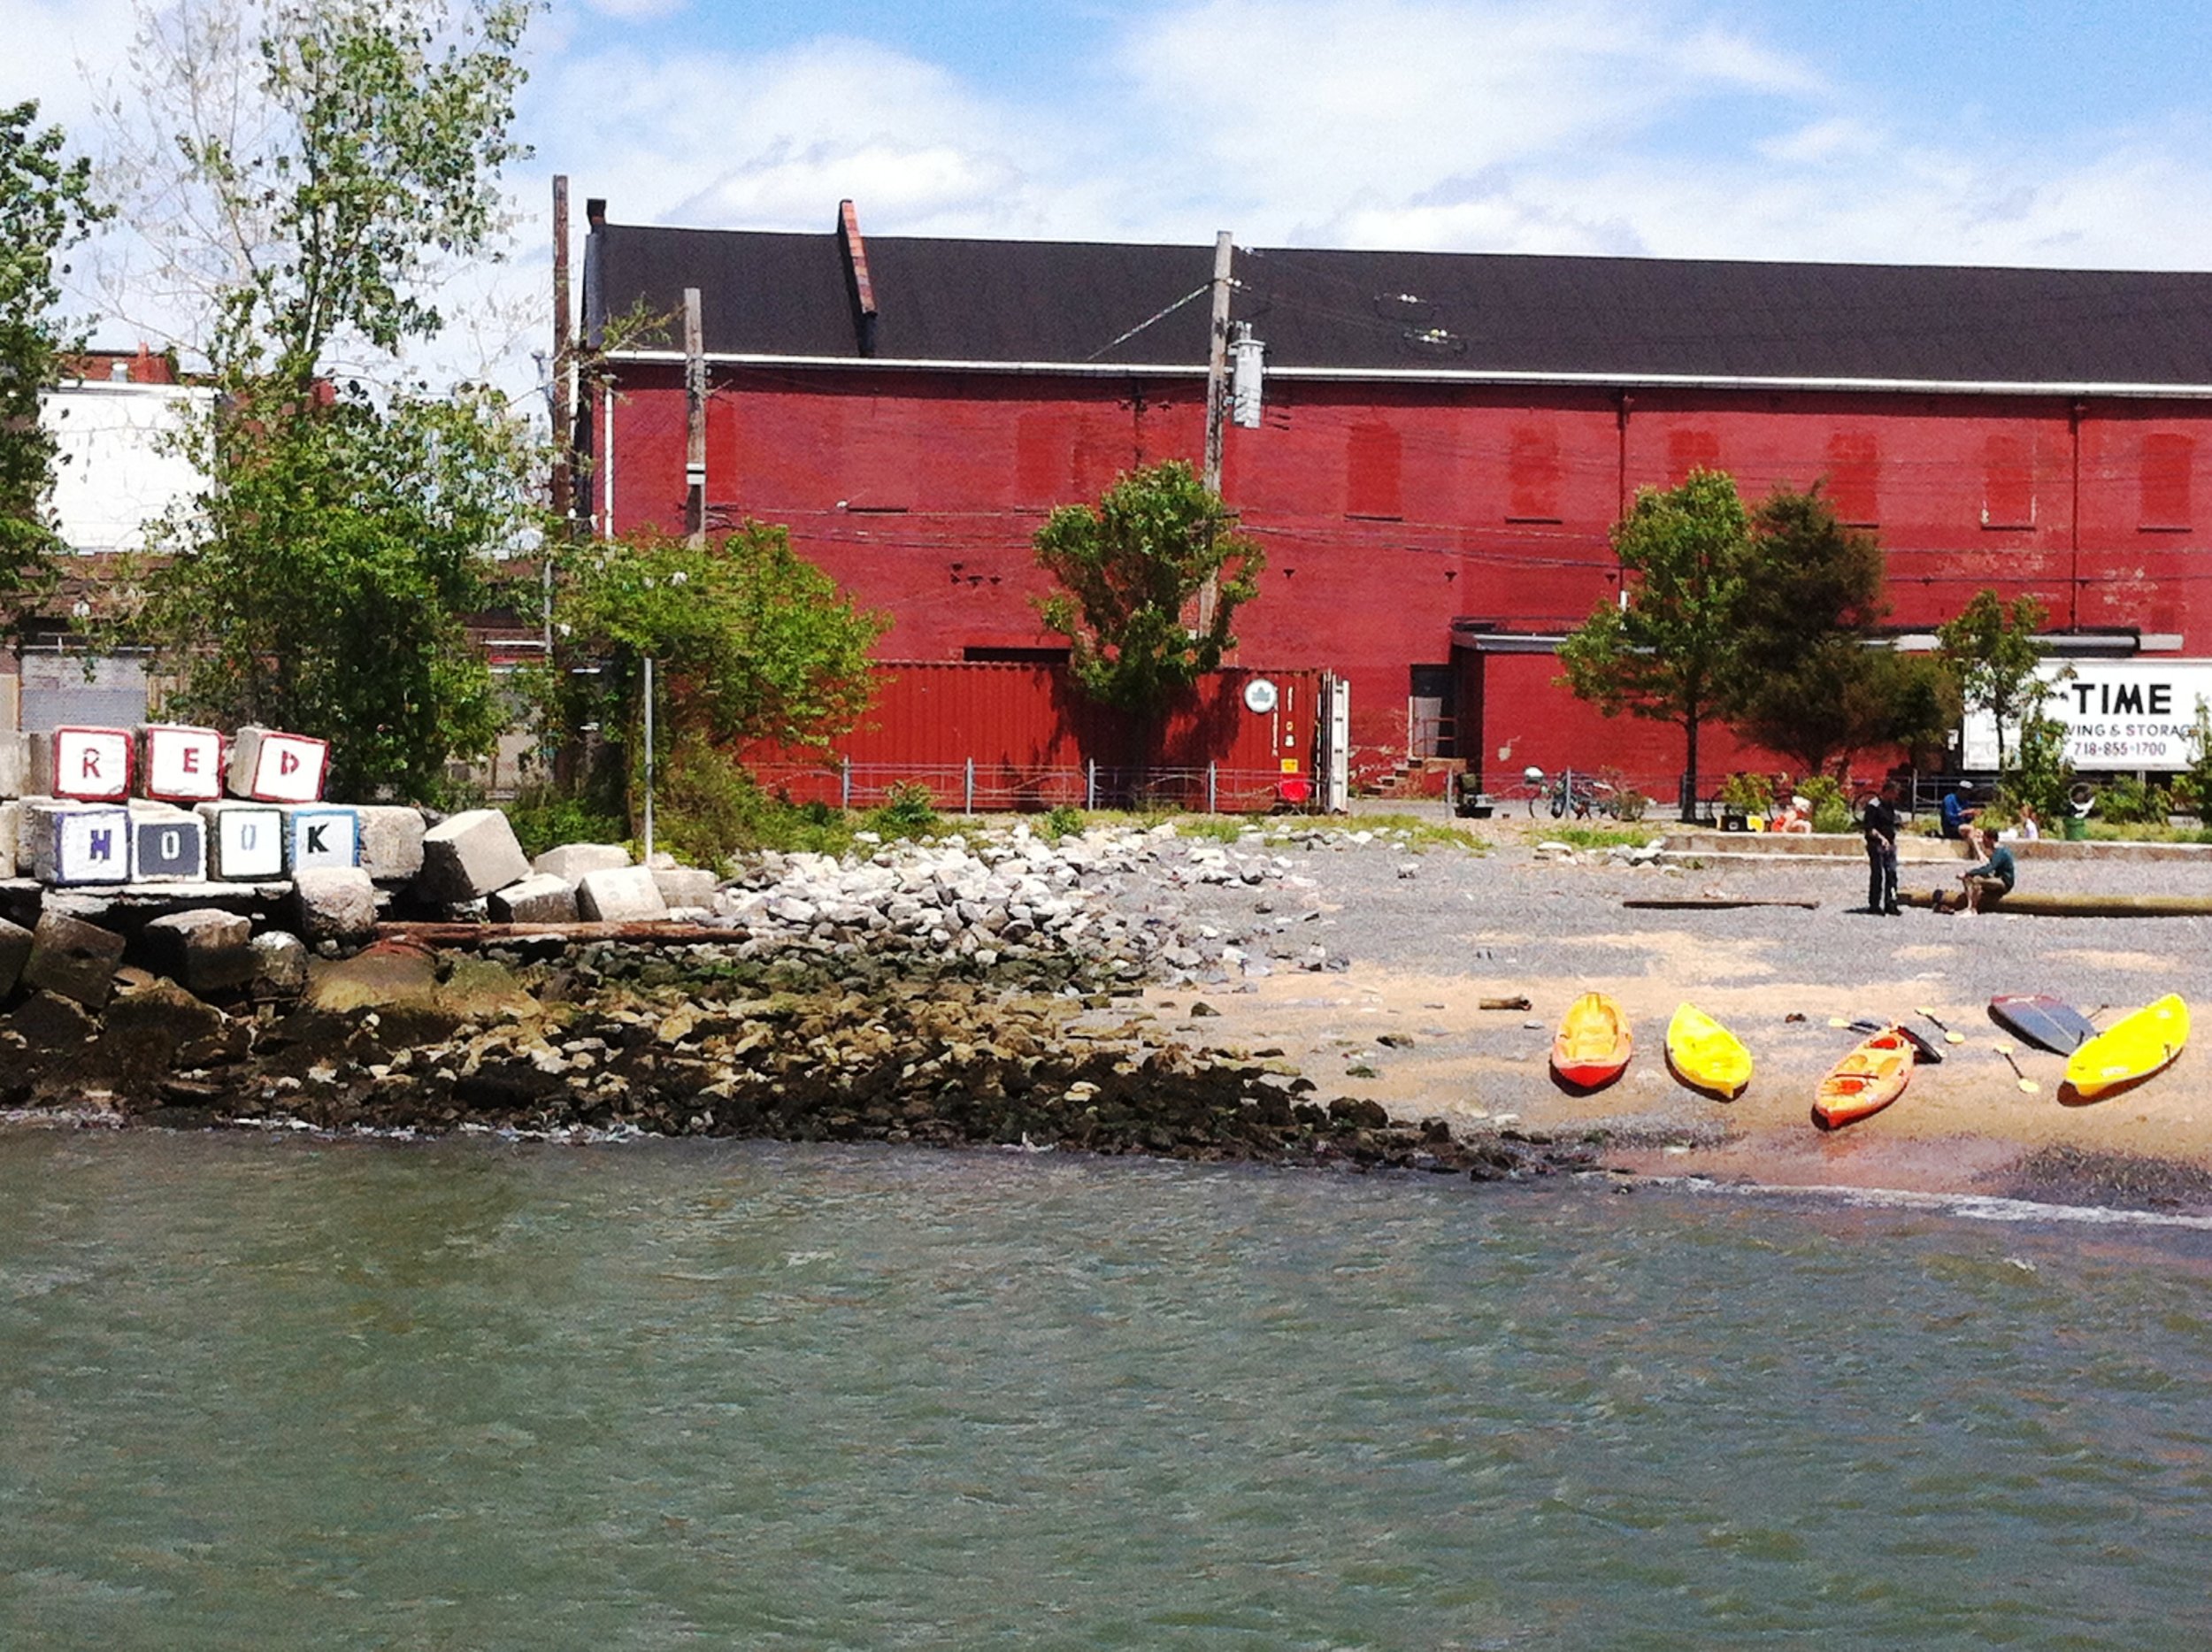 Red Hook Kayak.jpg